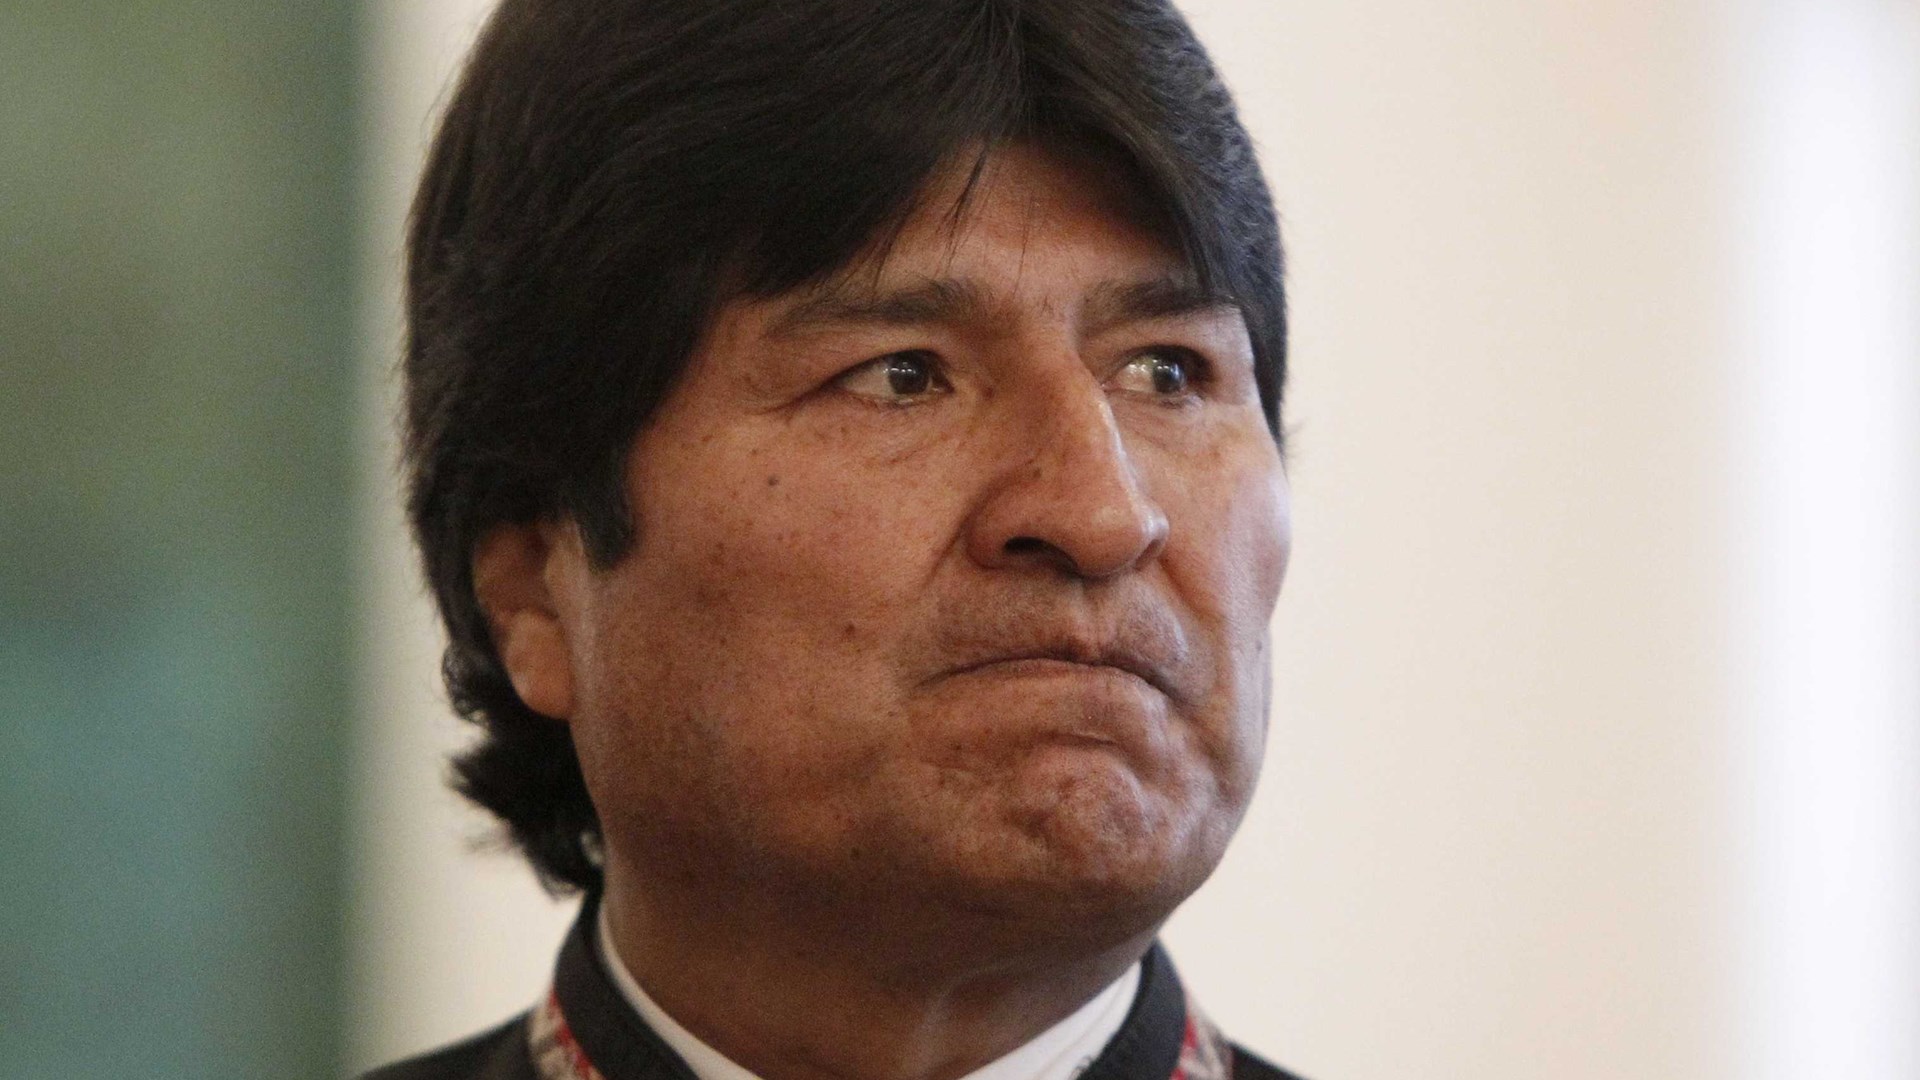 Βολιβία: Η εκλογική επιτροπή ακύρωσε την υποψηφιότητα του πρώην προέδρου Μοράλες